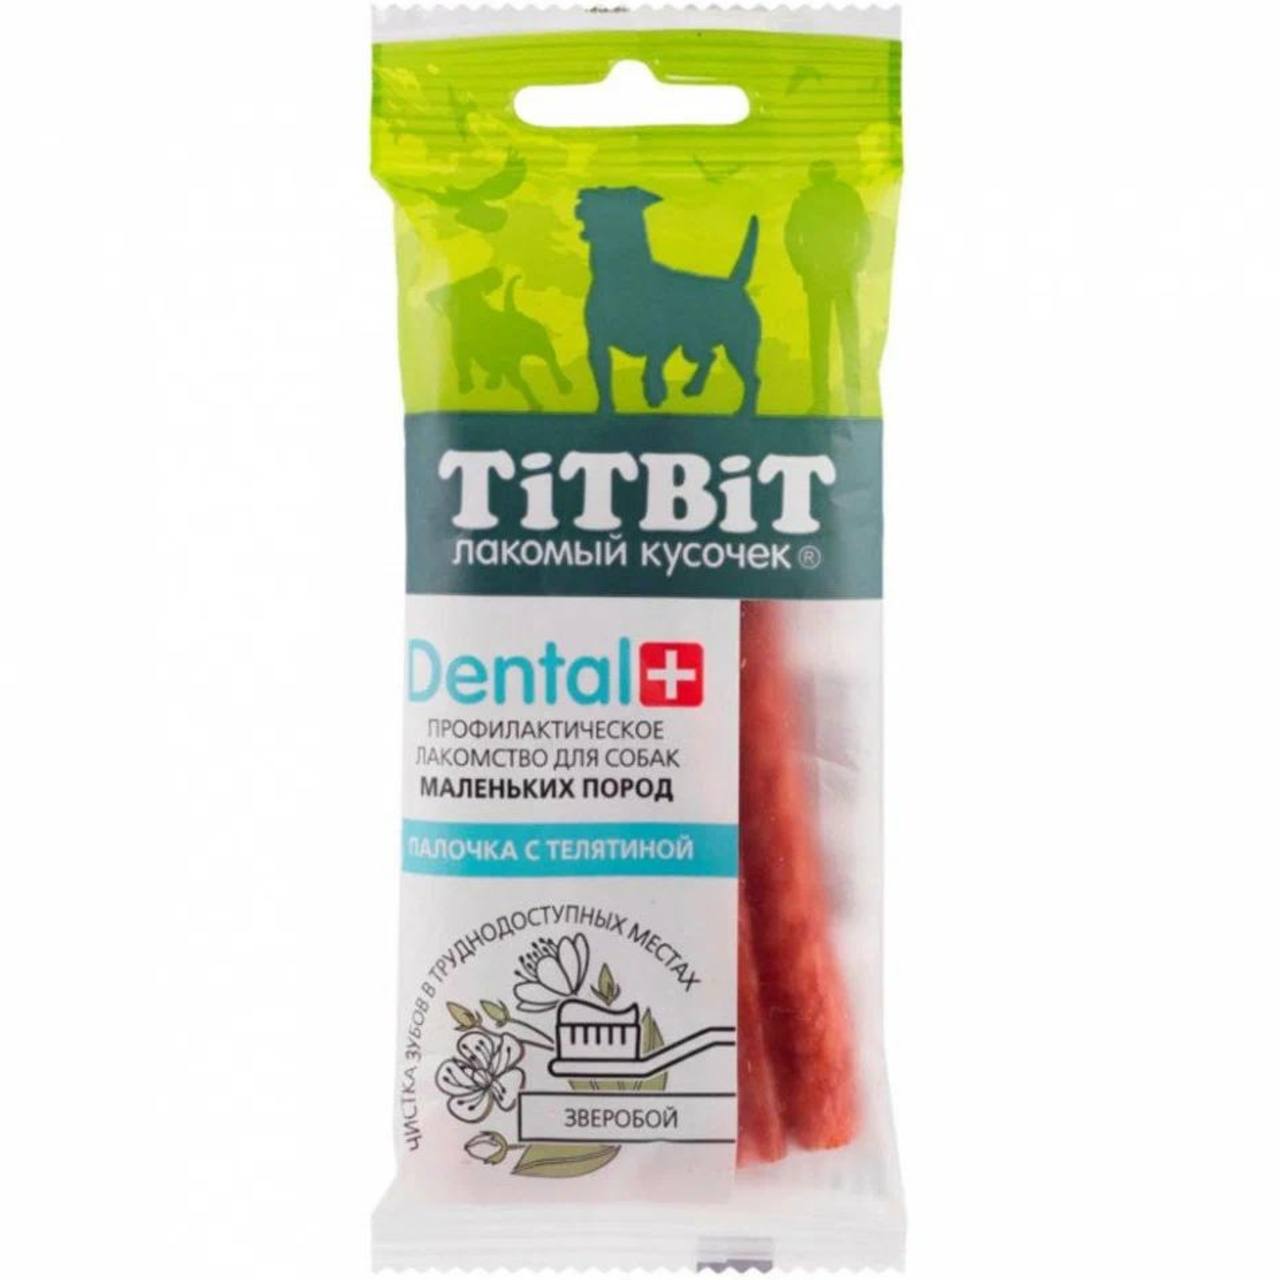 Лакомство Titbit Dental+  палочка с телятиной д/соб мелк пор 20 г